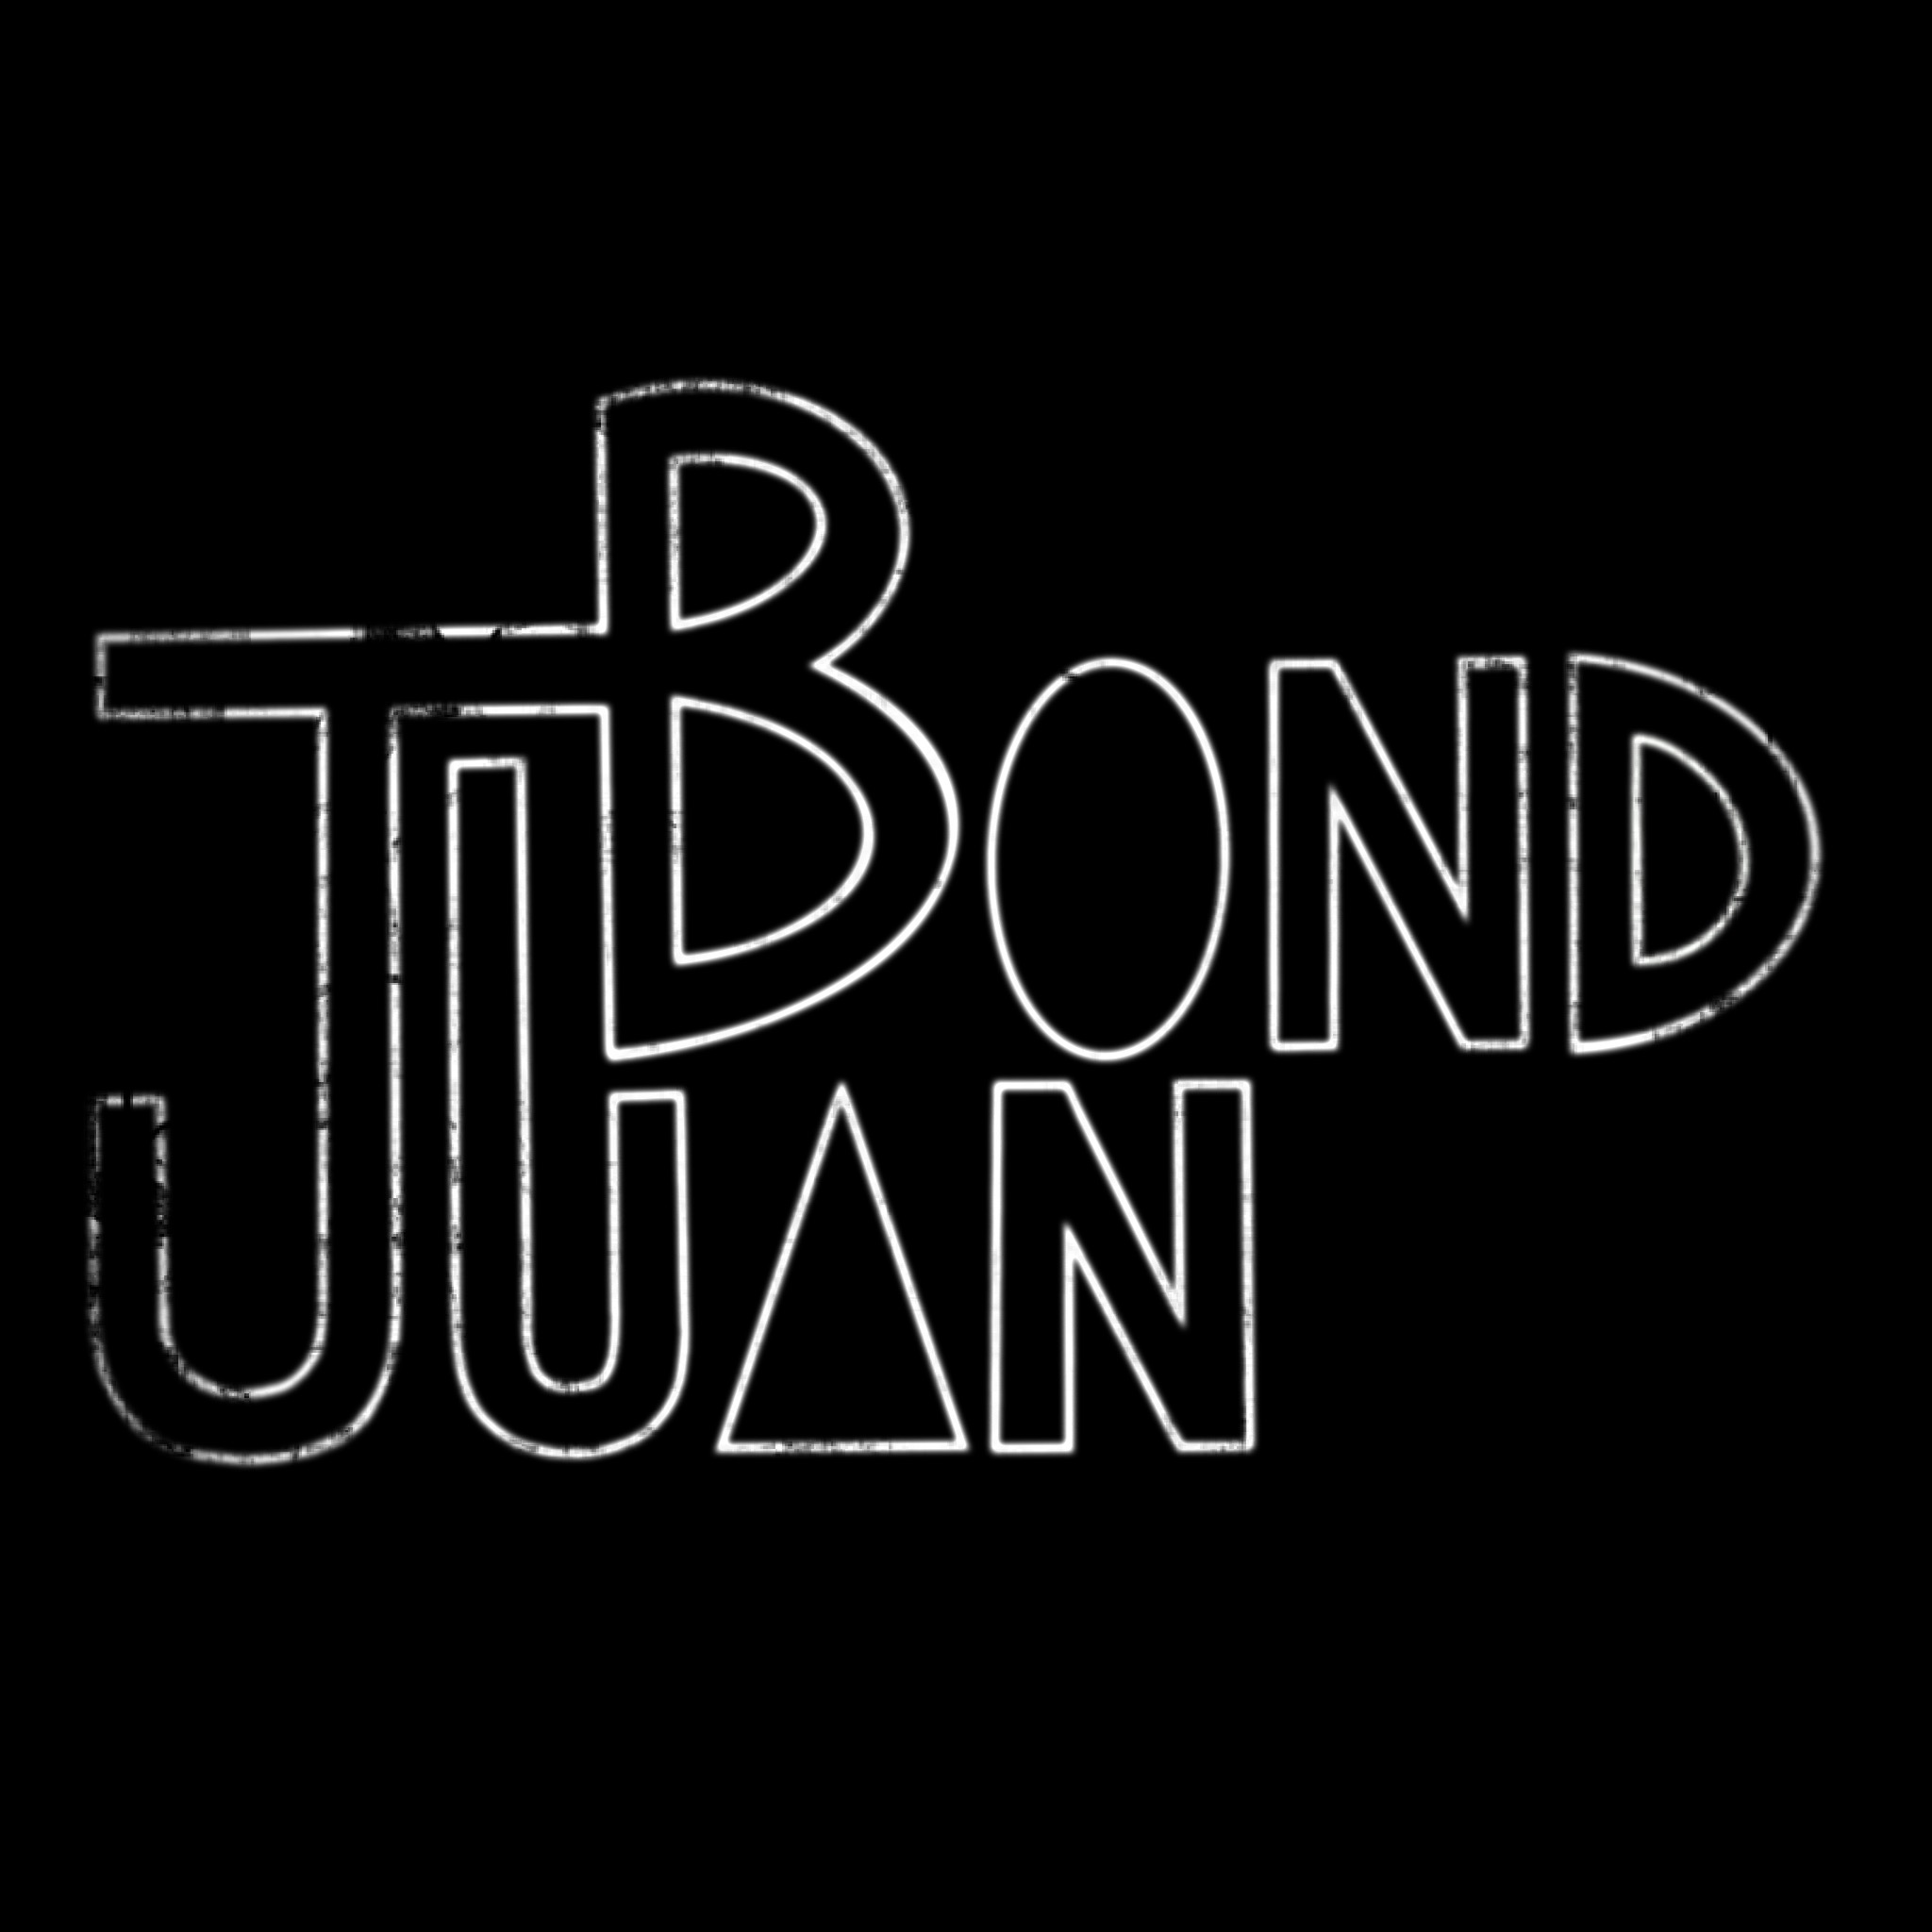 Juan Bond